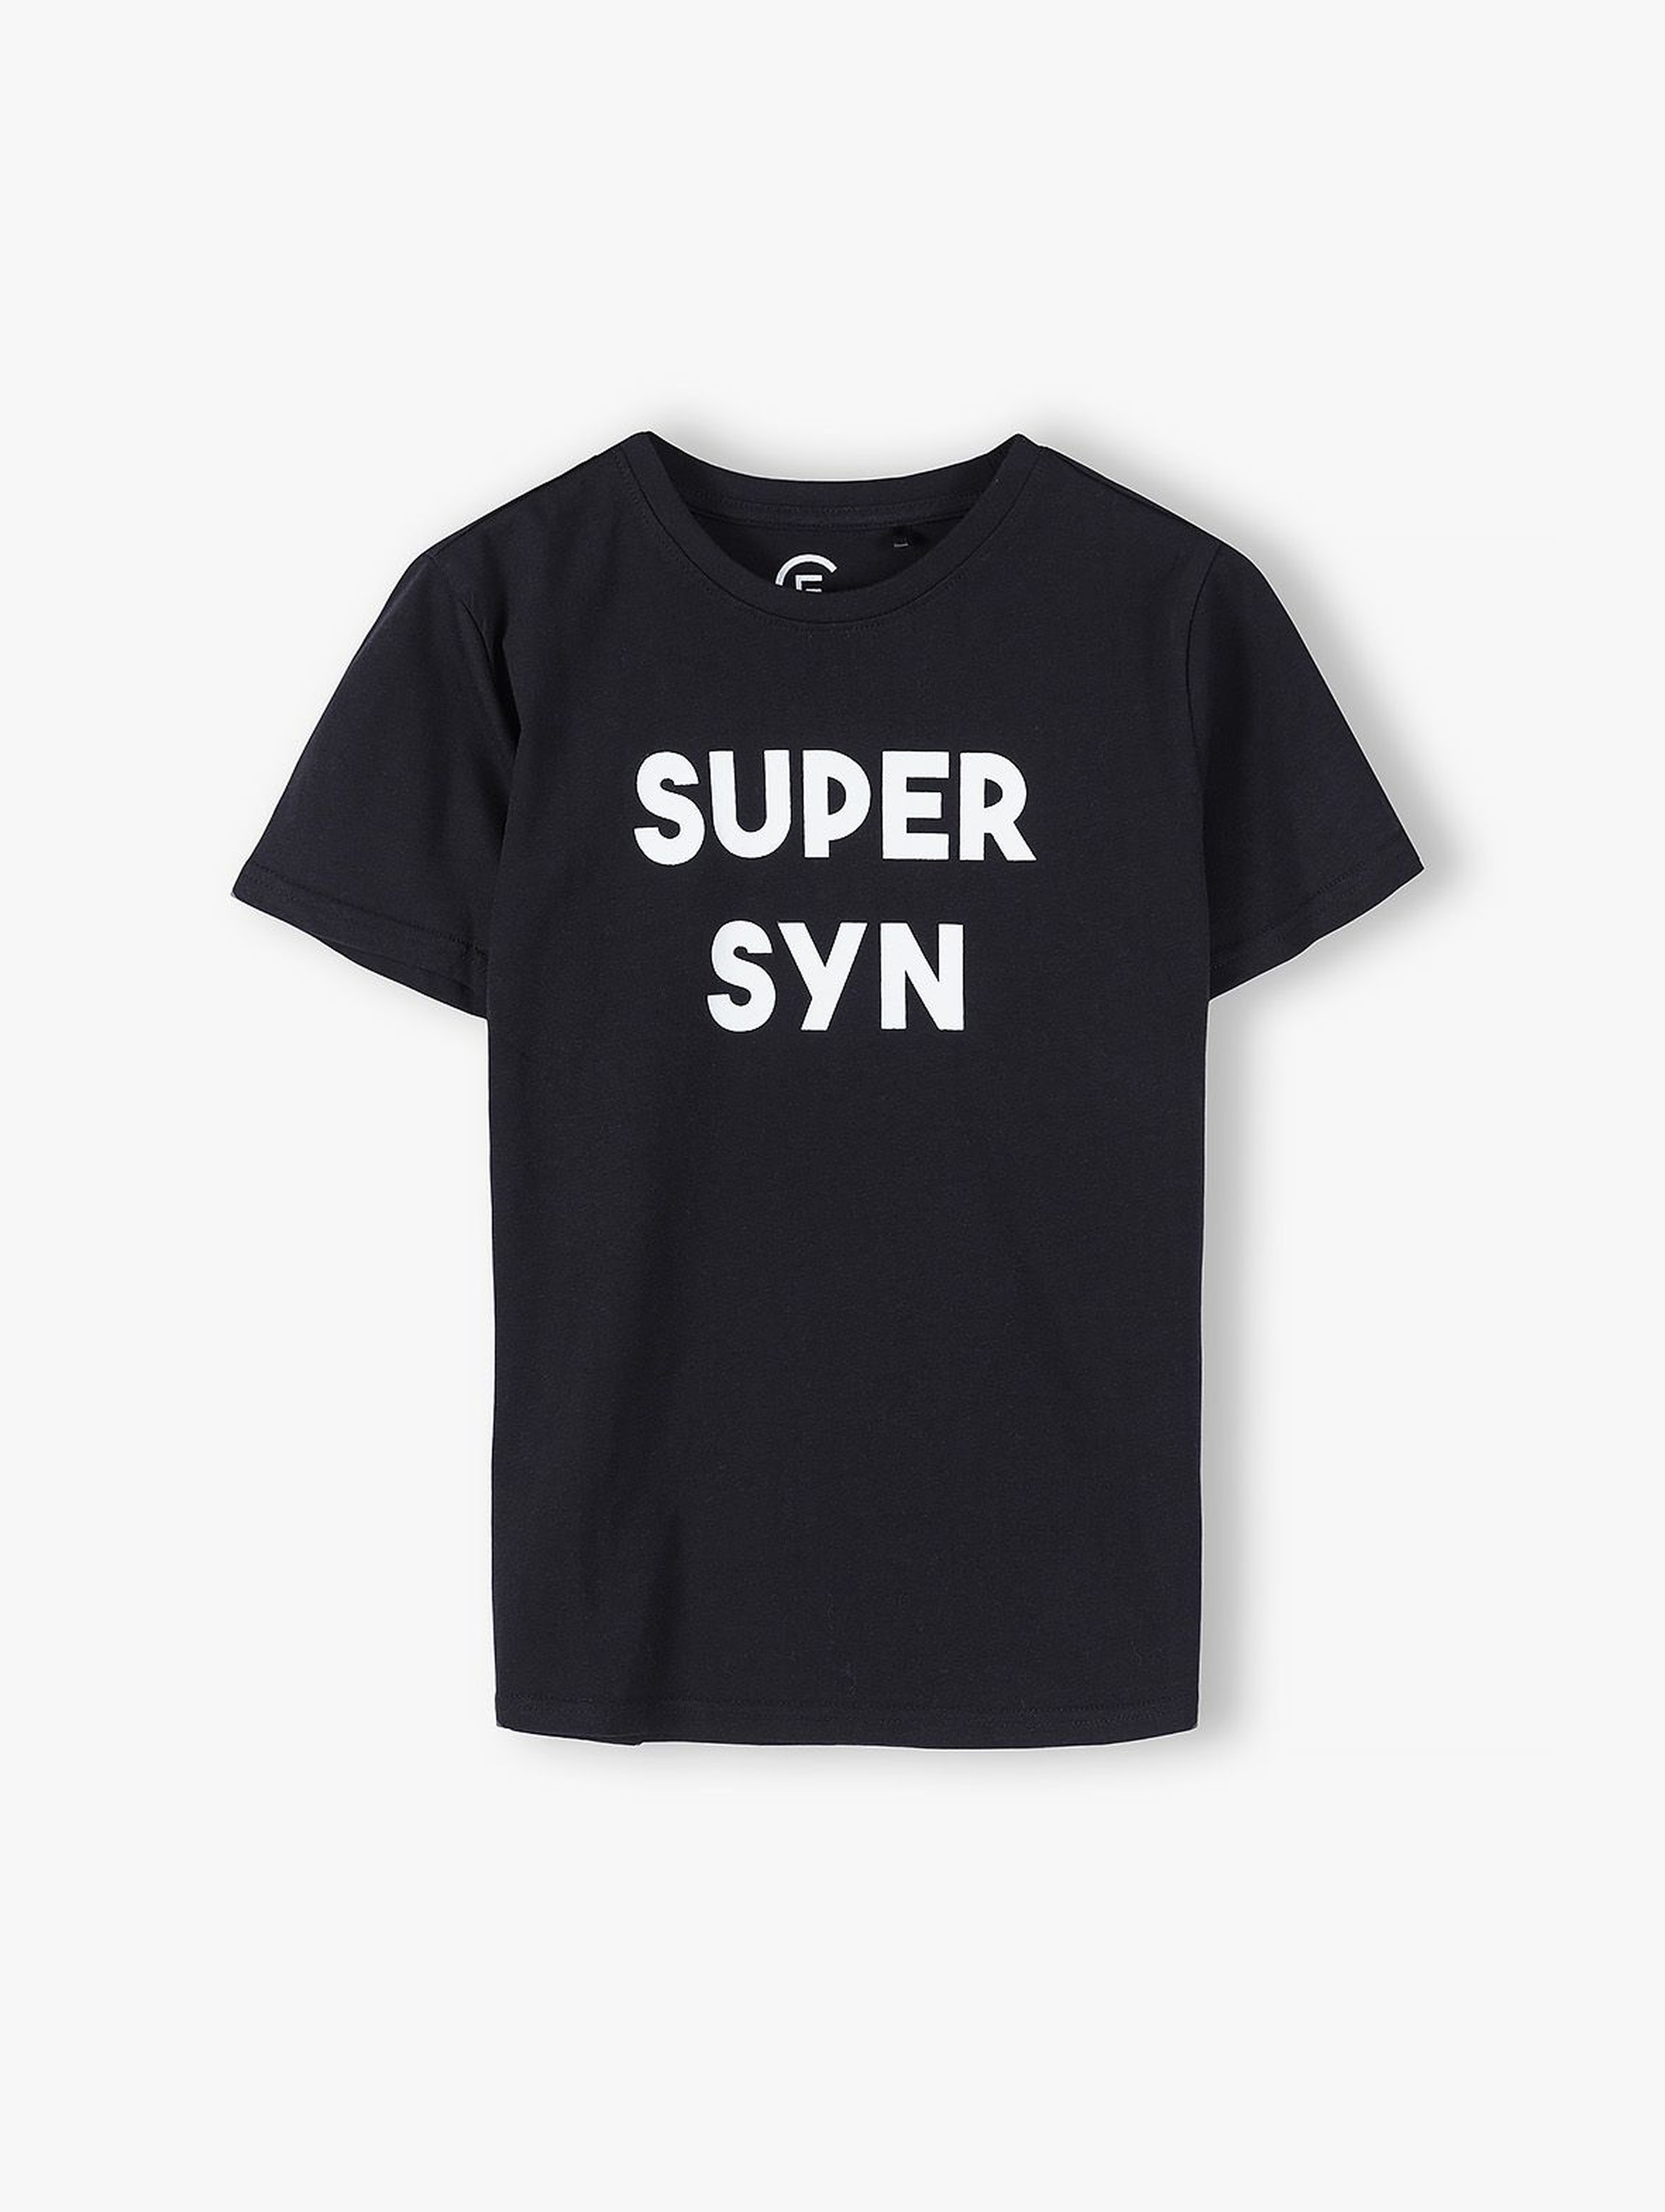 Bawełniany t-shirt chłopięcy z napisem- Super Syn- ubrania na całej rodziny